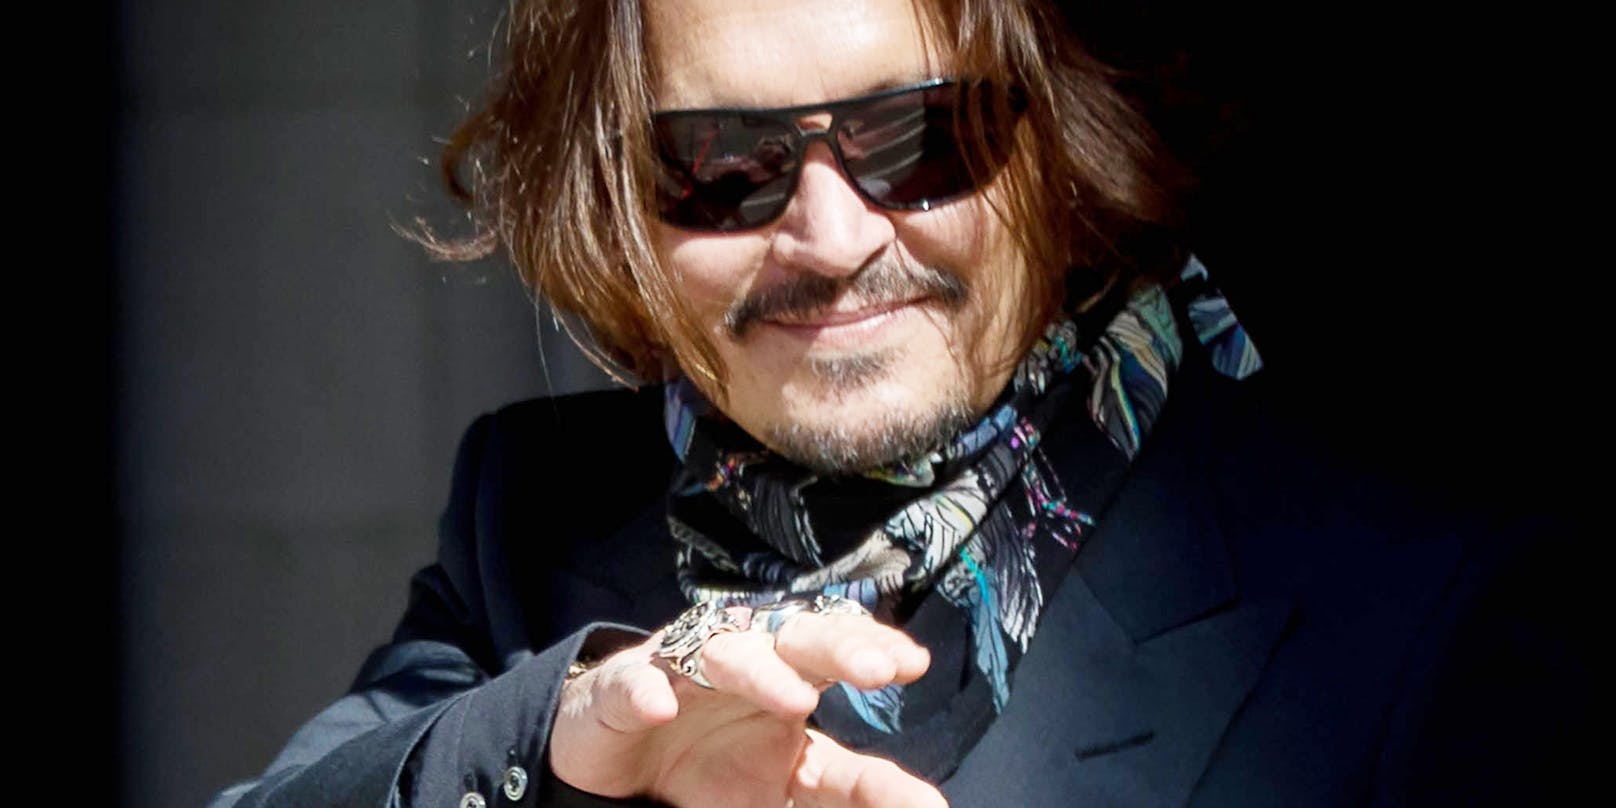 Soll Johnny Depp zu so etwas fähig sein?